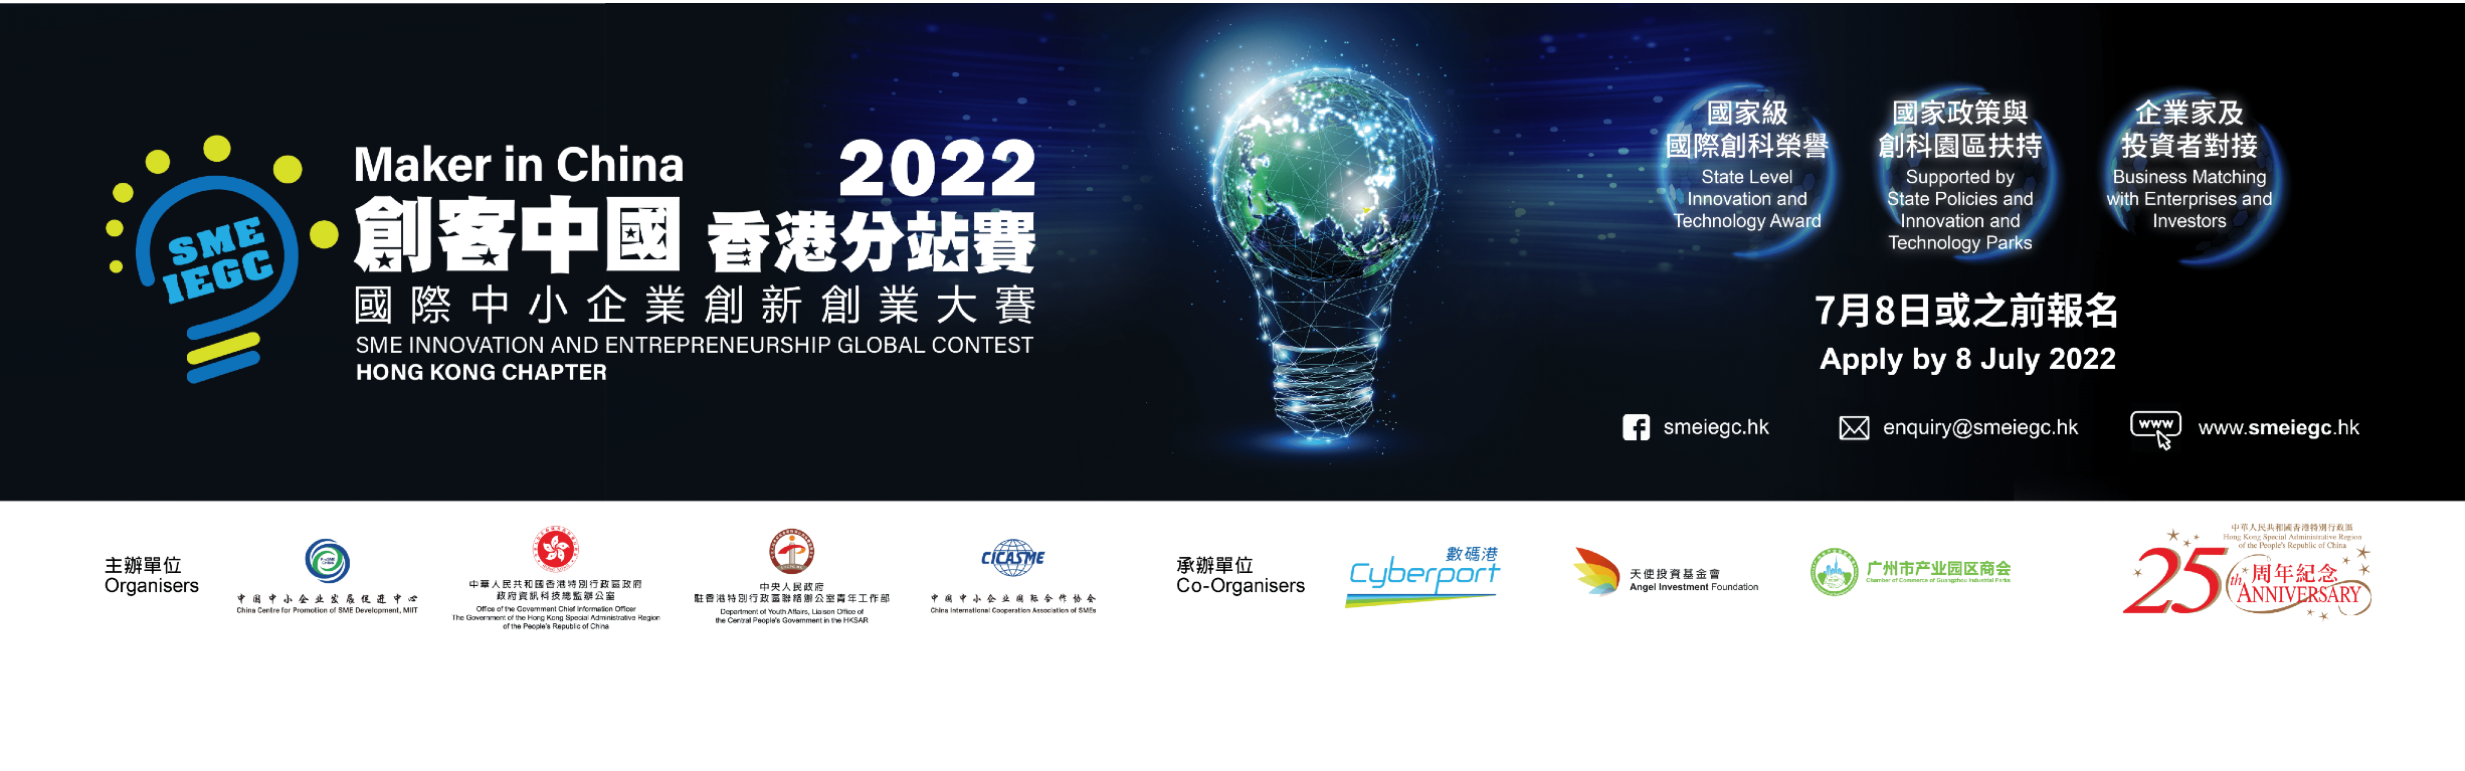 創客中國香港分站賽 2022 - 國際中小企業創新創業大賽